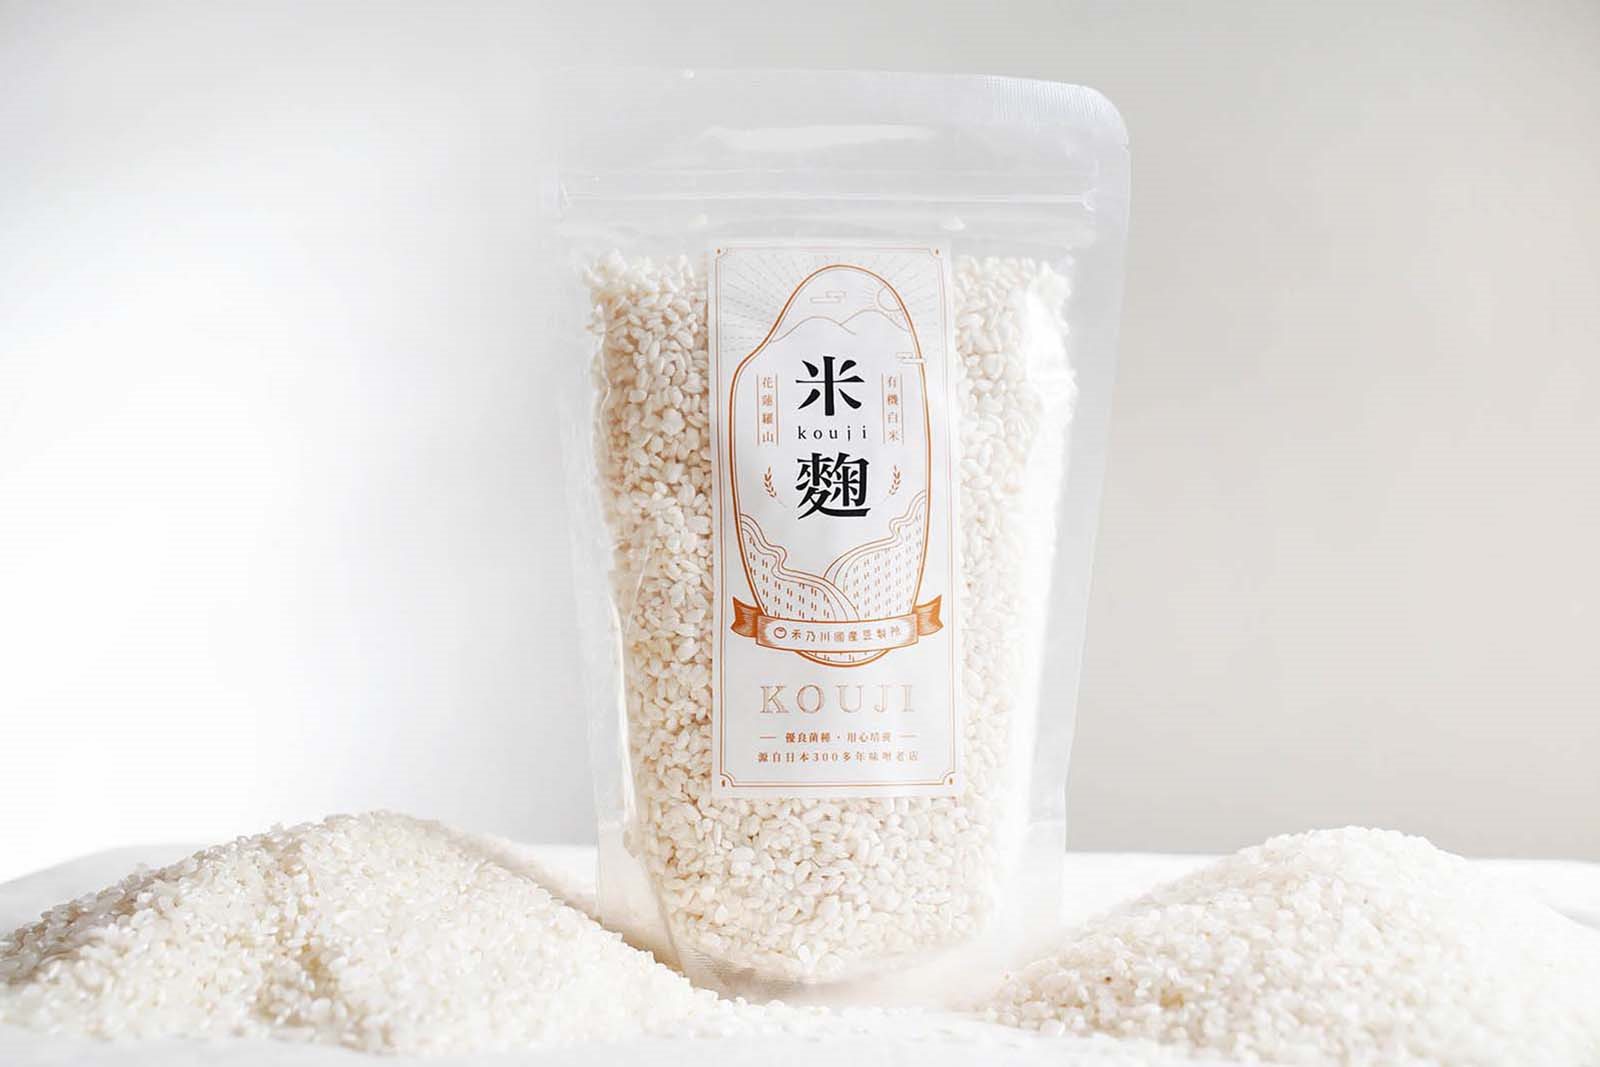 還在自製米麴嗎？禾乃川國產豆製所使用臺灣白米，提供臺灣白米麴新選擇!